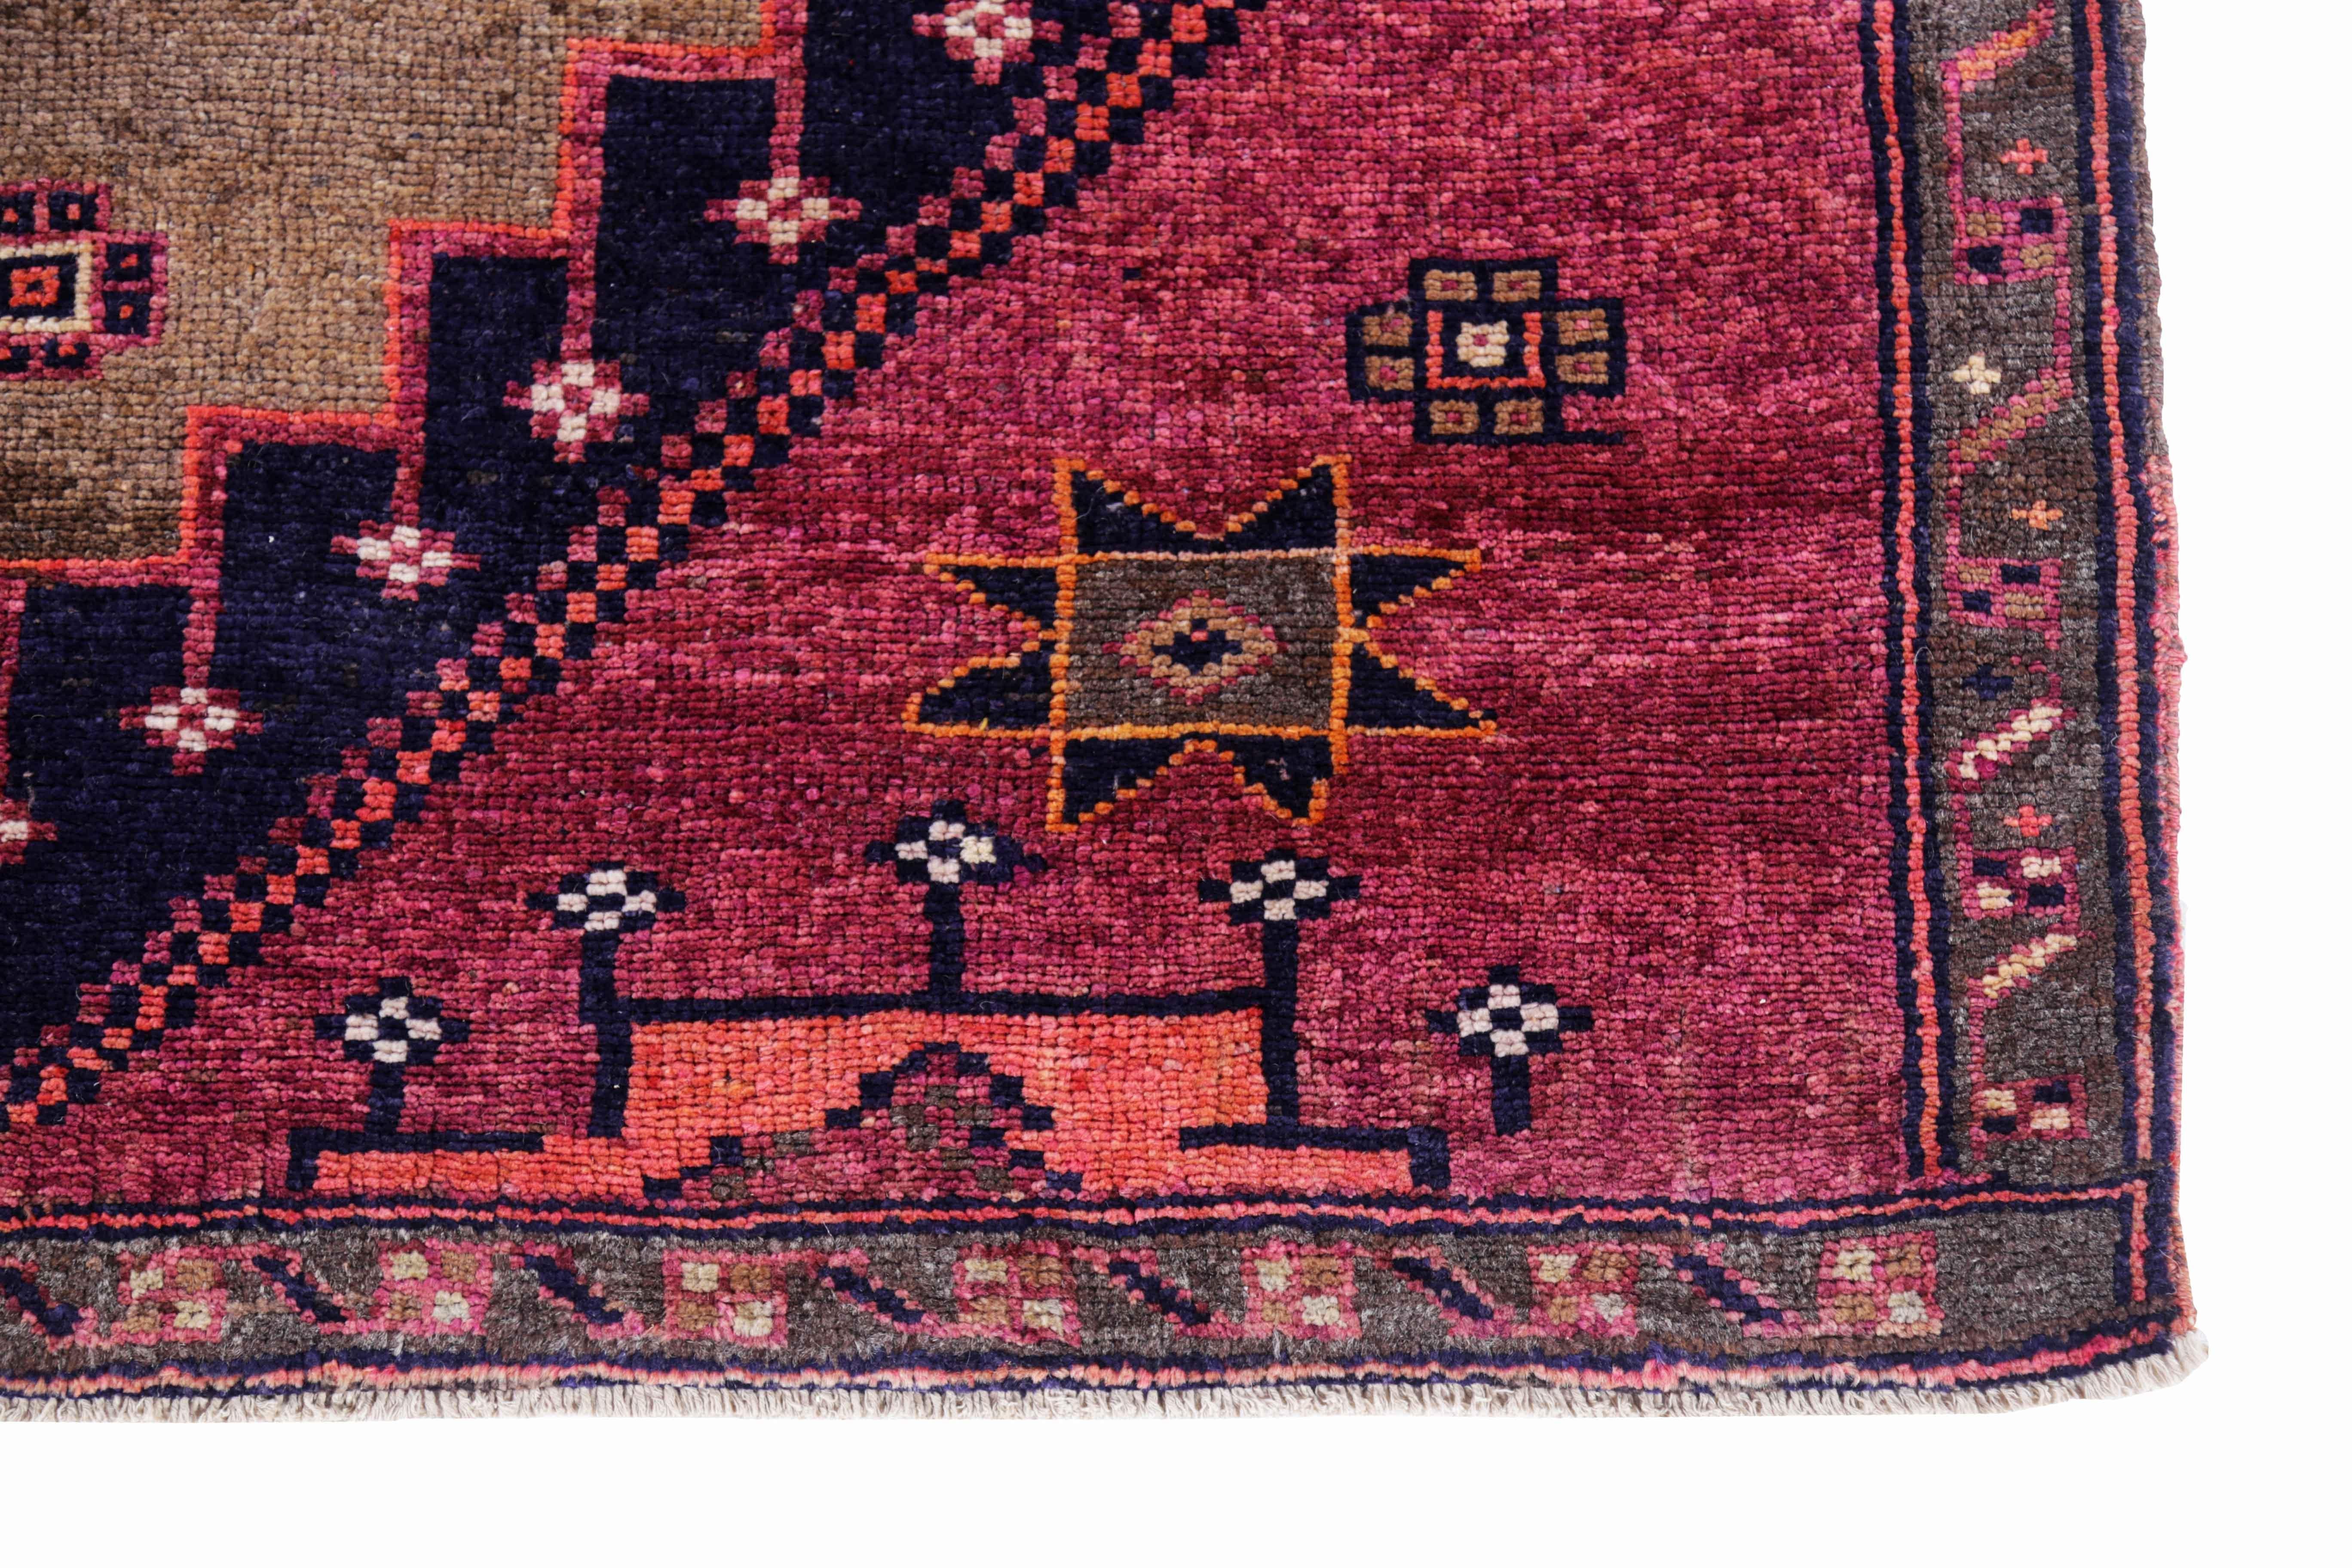 Antique Persian Area Rug Azerbaijan Design In Excellent Condition For Sale In Dallas, TX